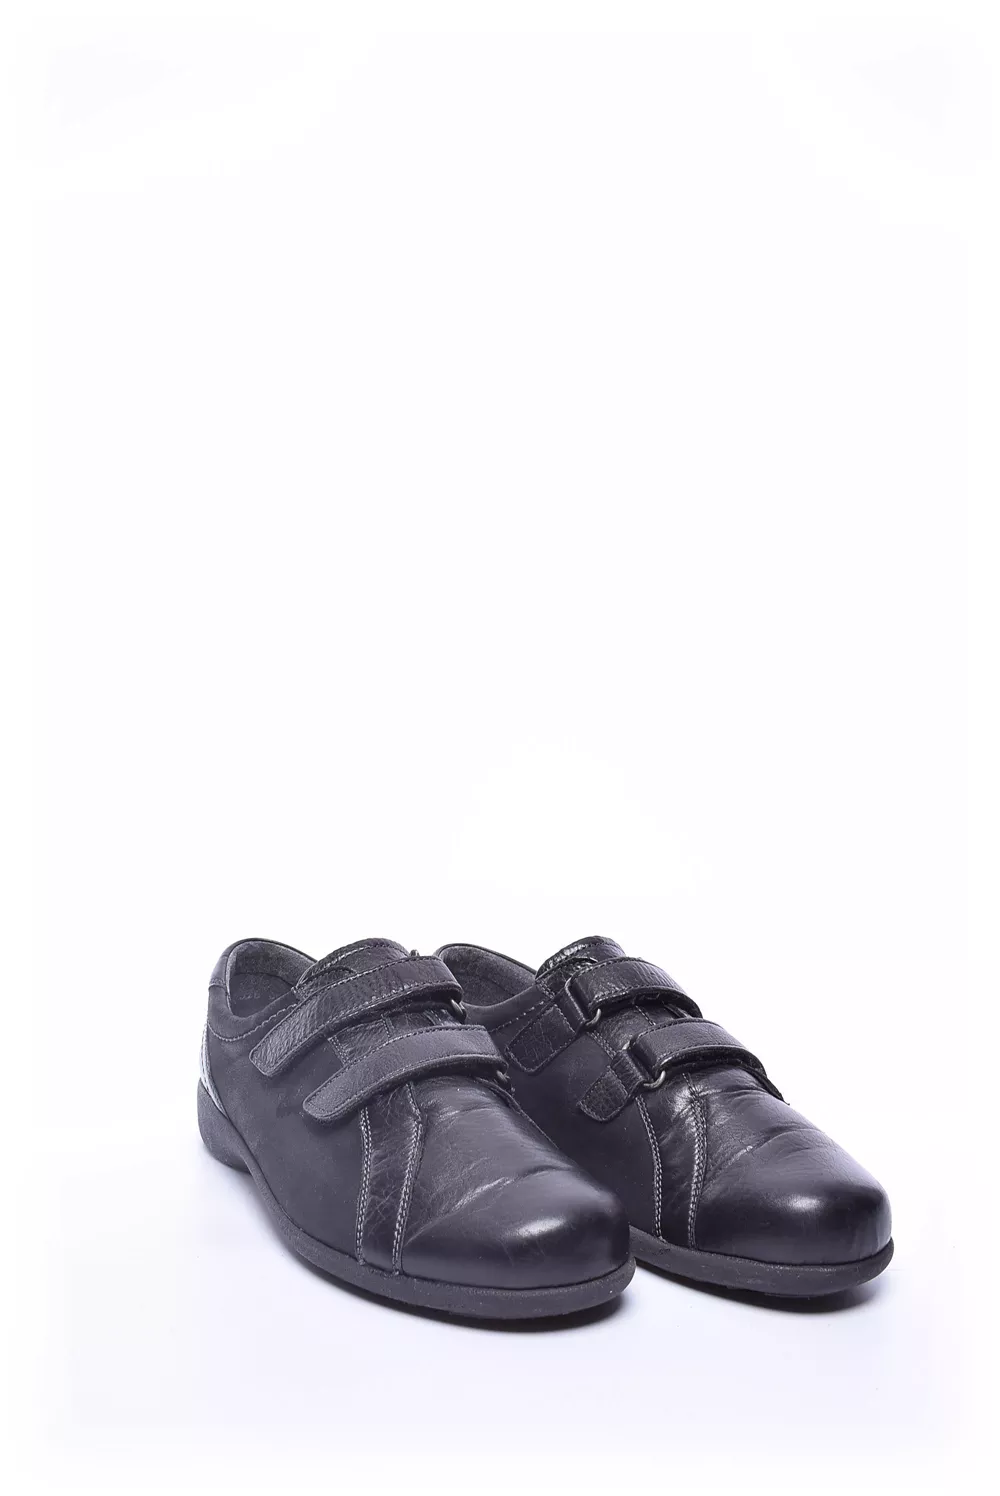 Pantofi dama [2]